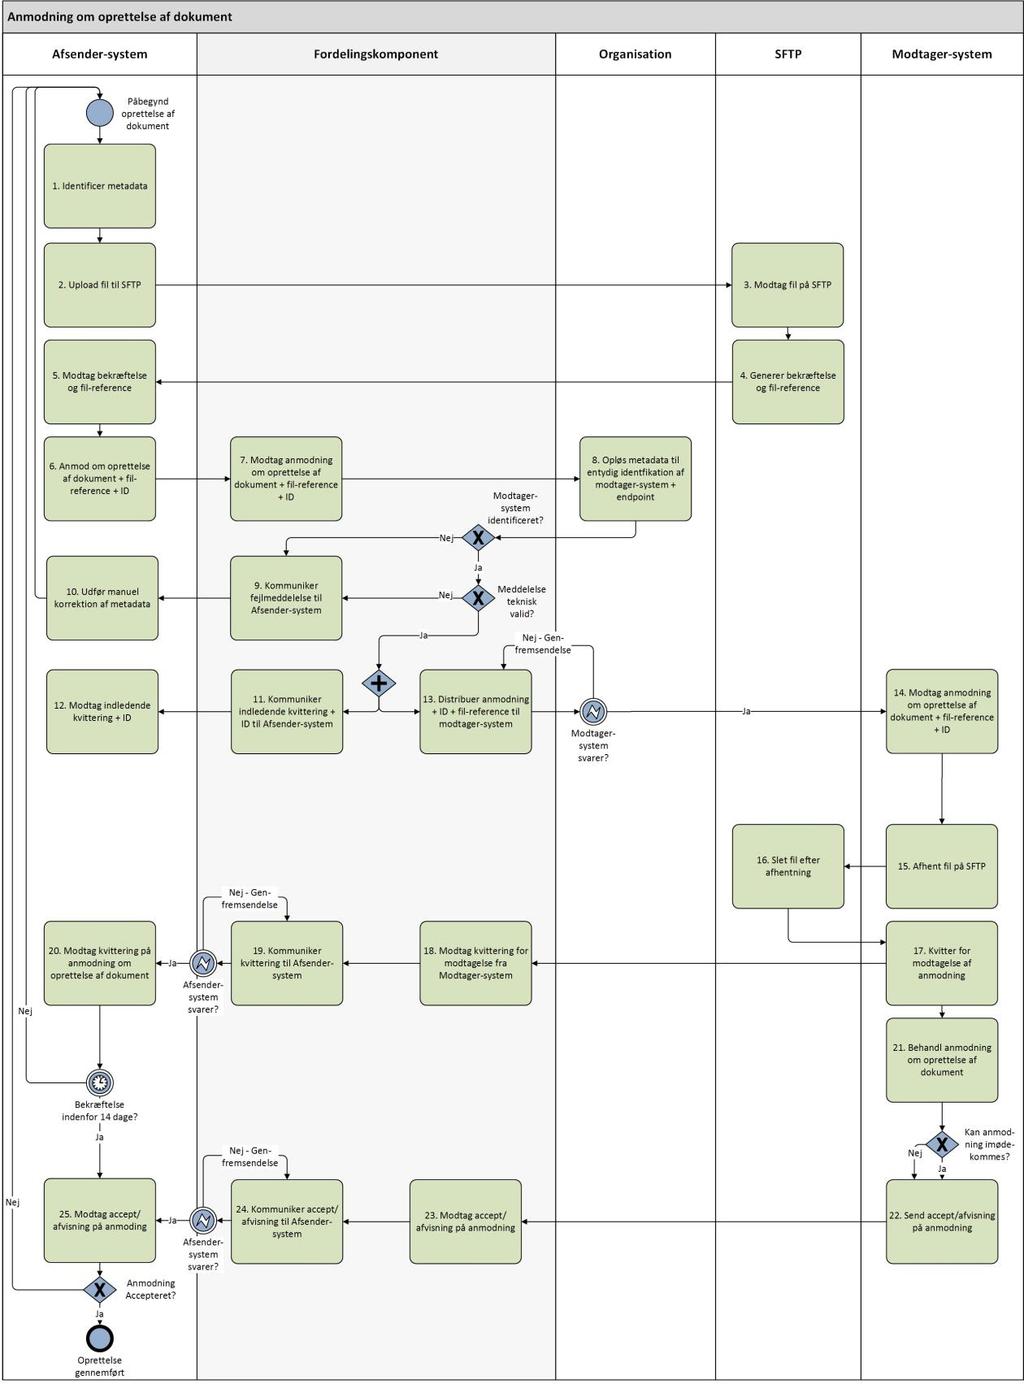 1.9.5 Generelt flow-diagram for anmodning om oprettelse af dokumenter KOMBIT